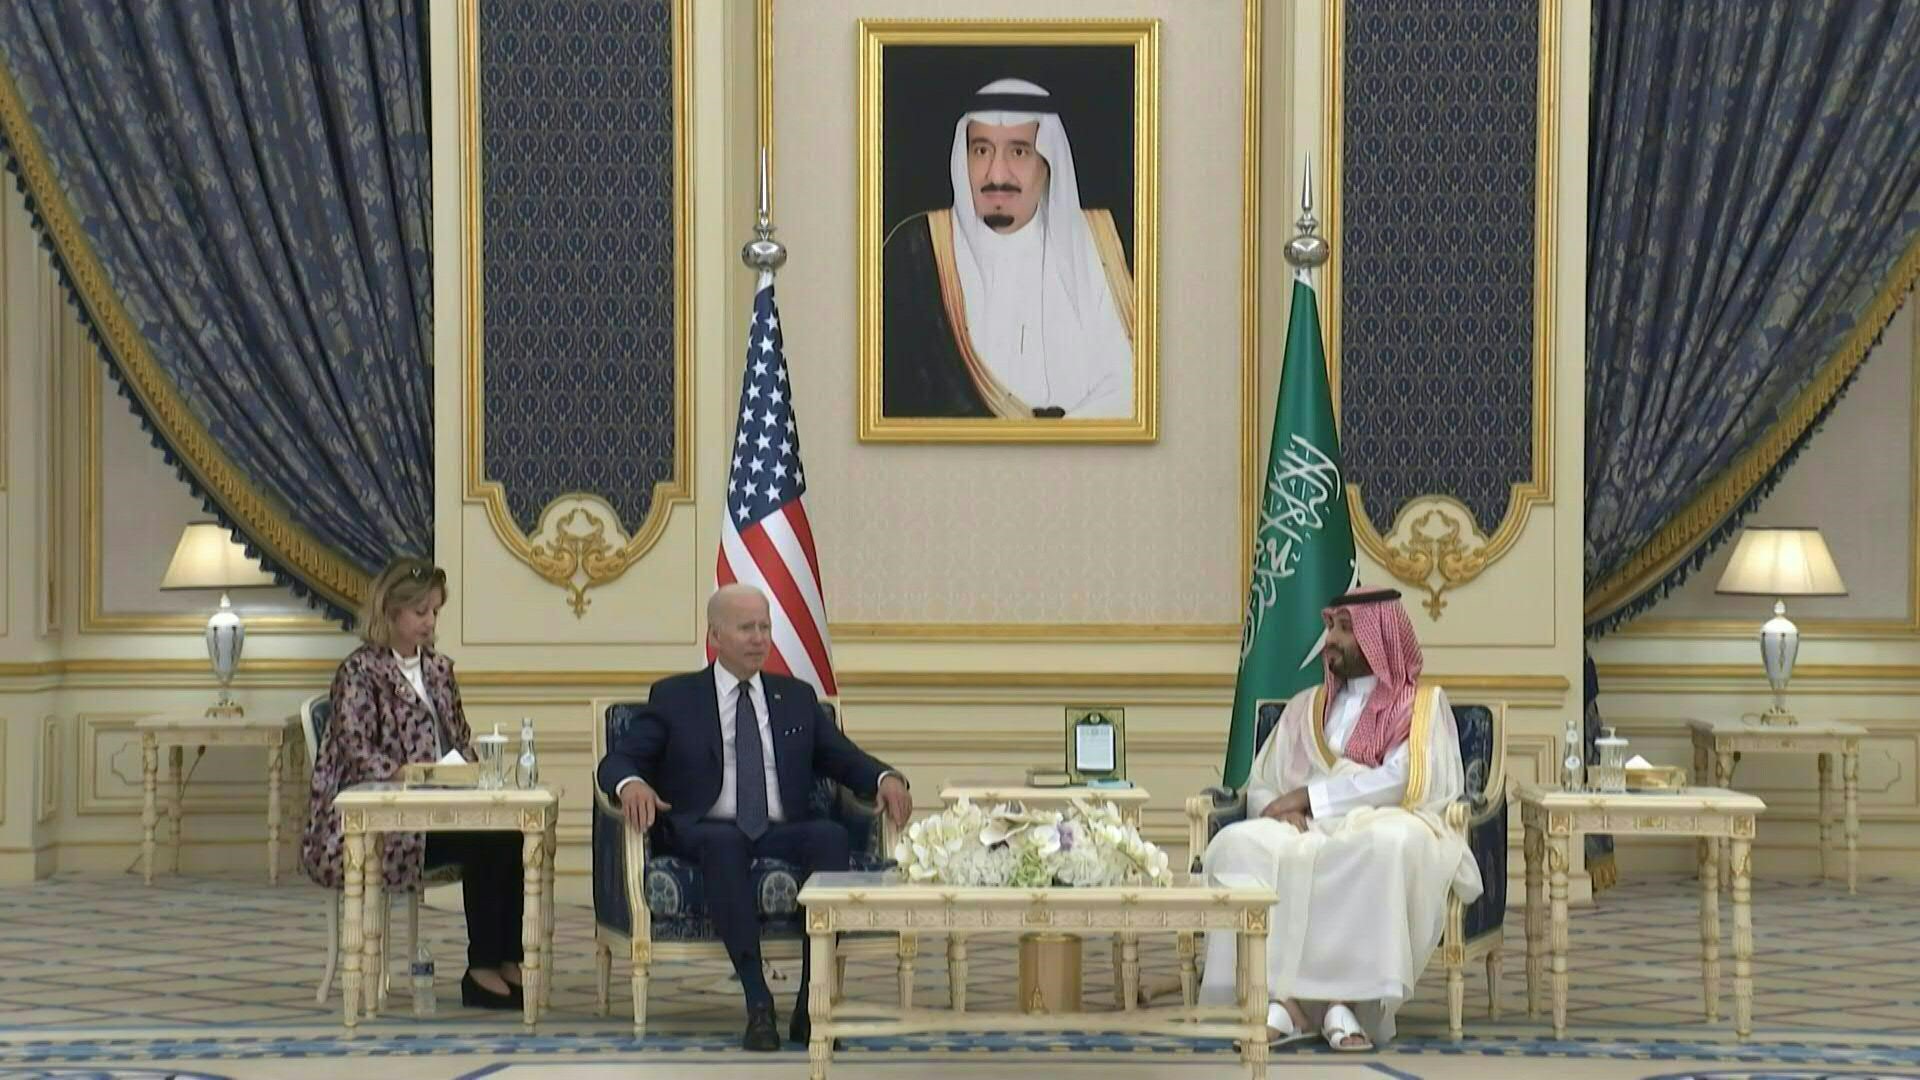 El presidente estadounidense Joe Biden llegó el viernes a Arabia Saudita, donde se vio con el rey Salmán bin Abdulaziz y el poderoso príncipe heredero, Mohamed bin Salmán, considerado por Washington como el instigador del asesinato del periodista Jamal Khashoggi.